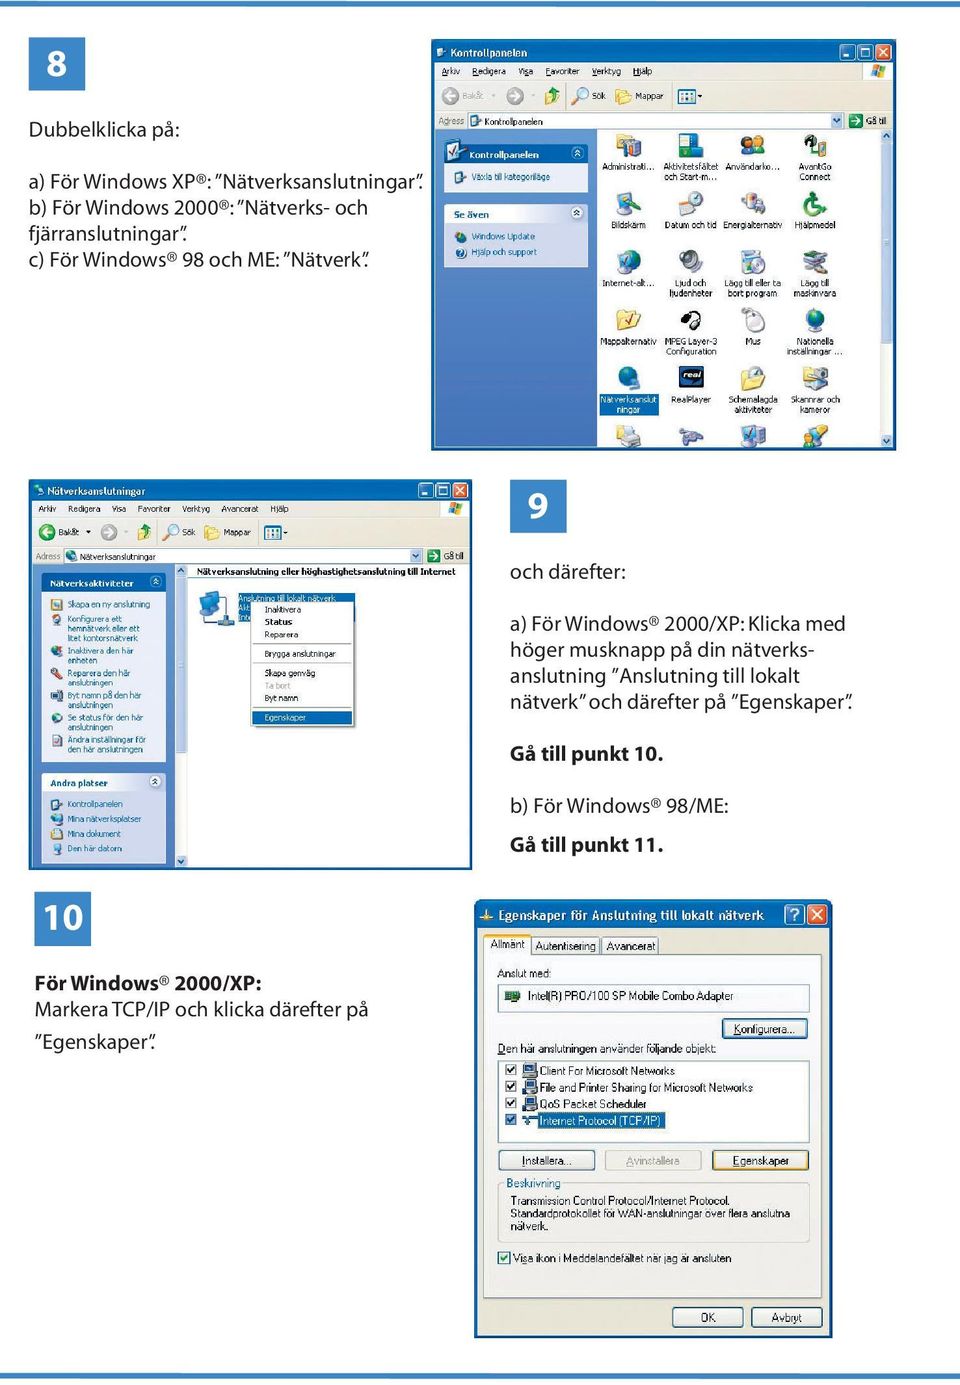 9 och därefter: a) För Windows 2000/XP: Klicka med höger musknapp på din nätverksanslutning Anslutning till